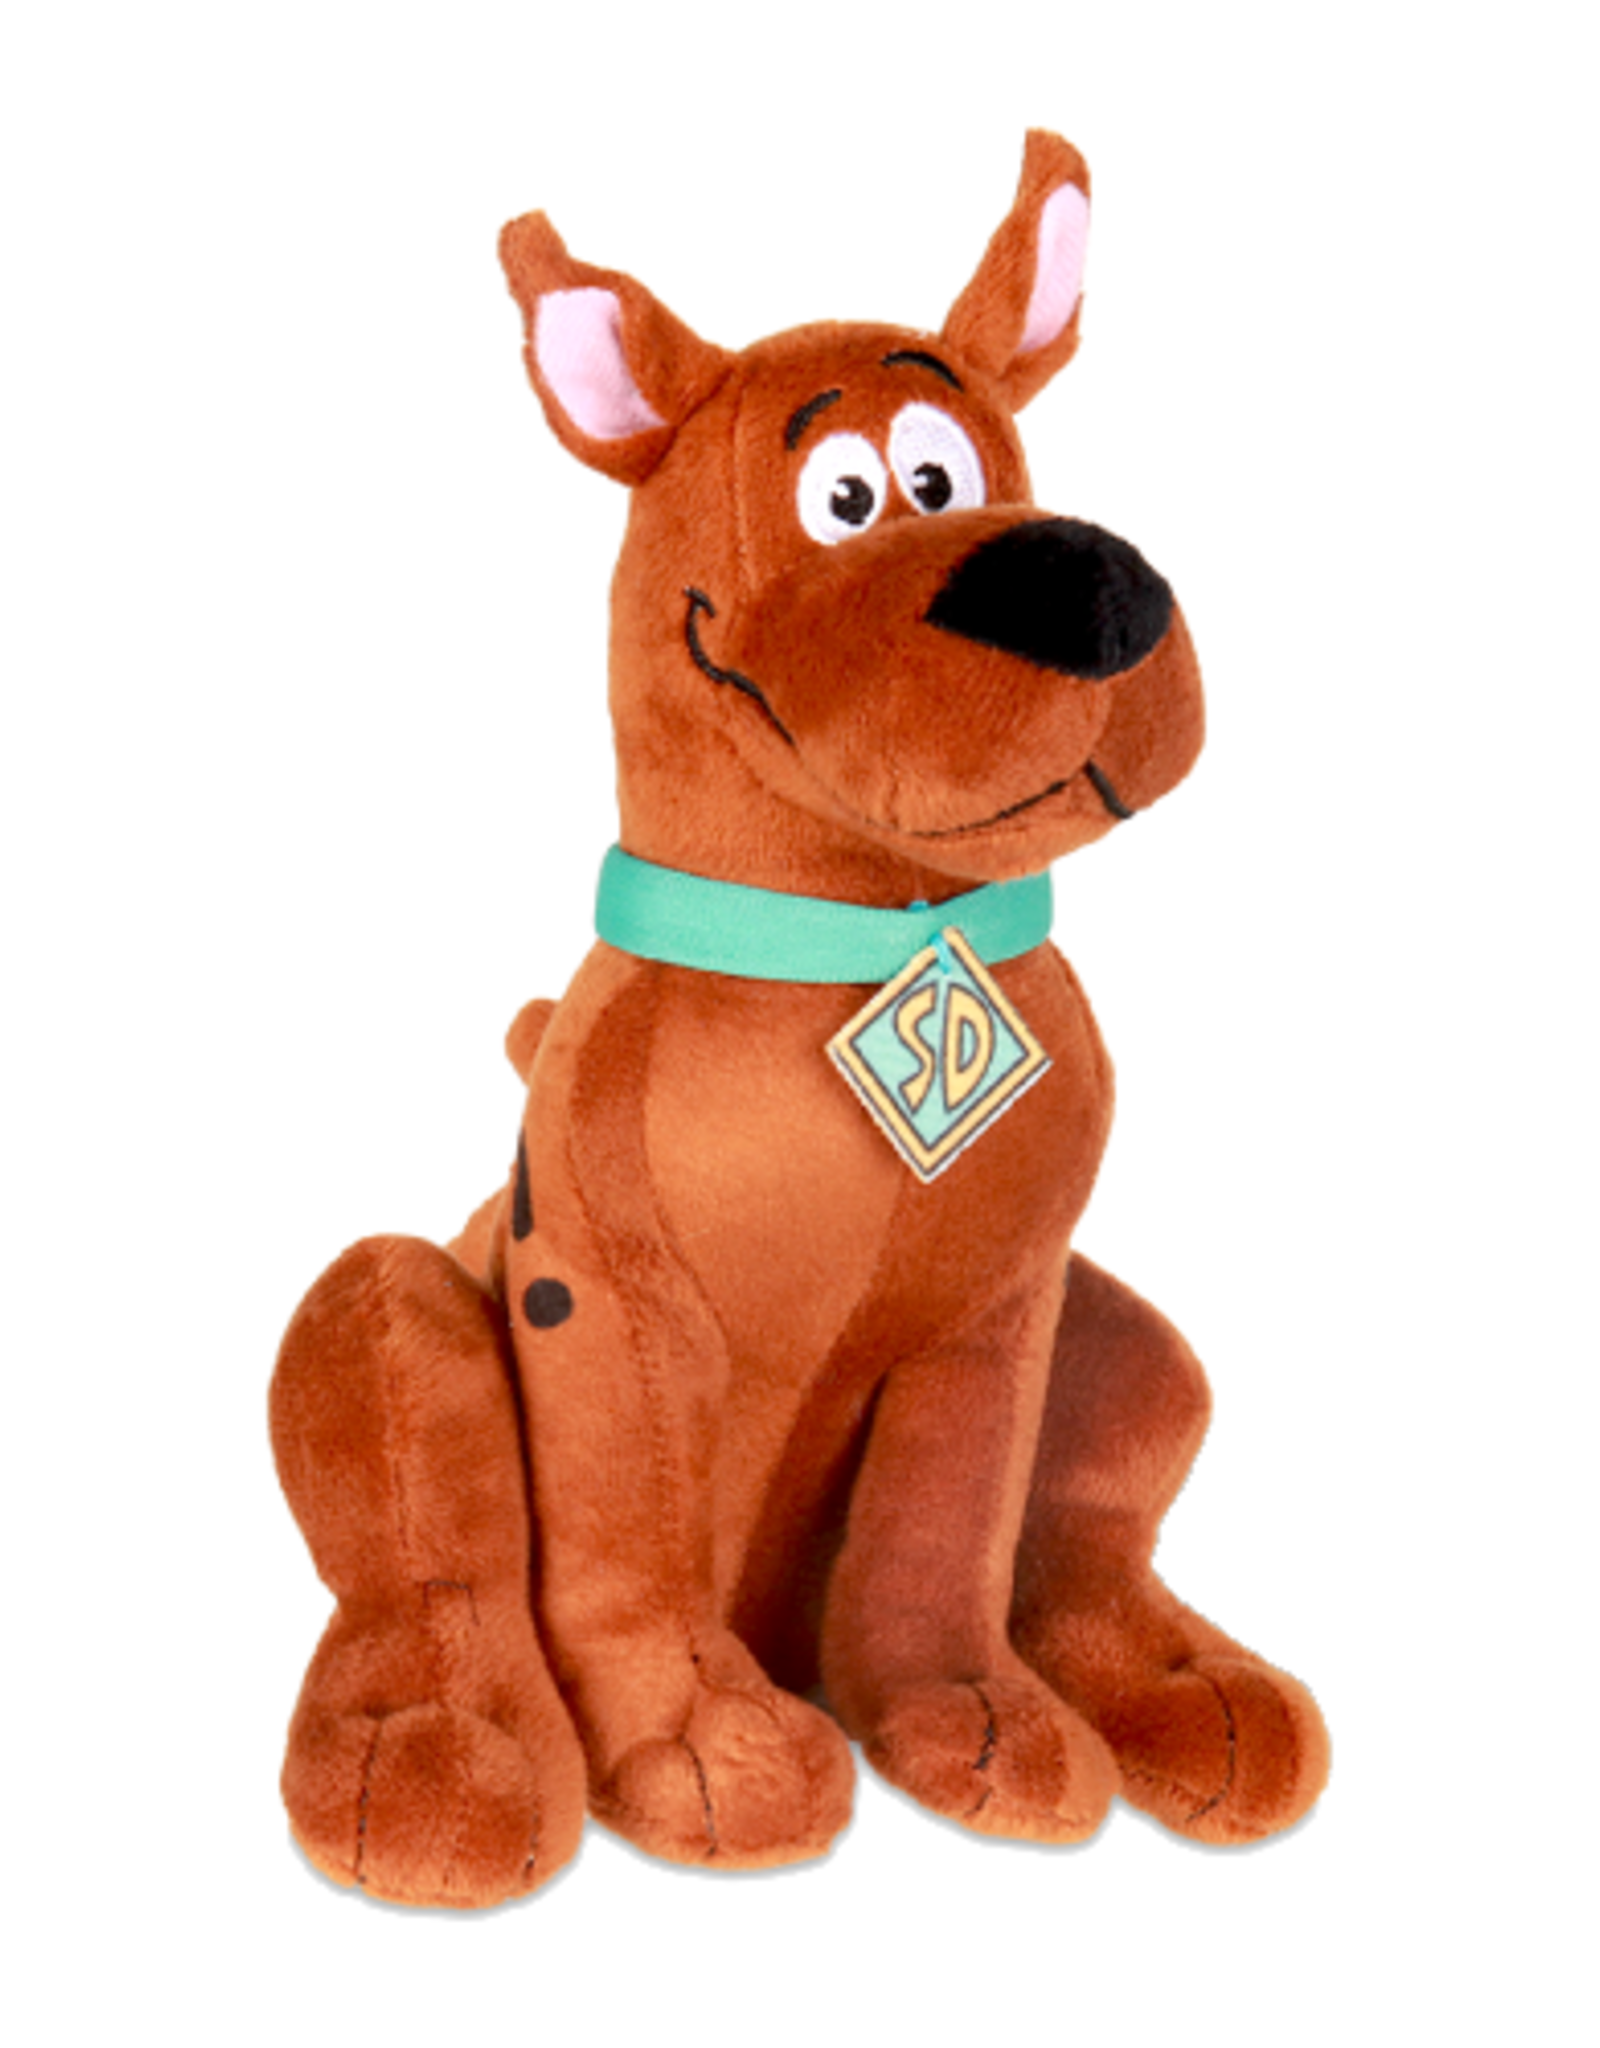 Basic Fun - Scooby Doo Small Plush